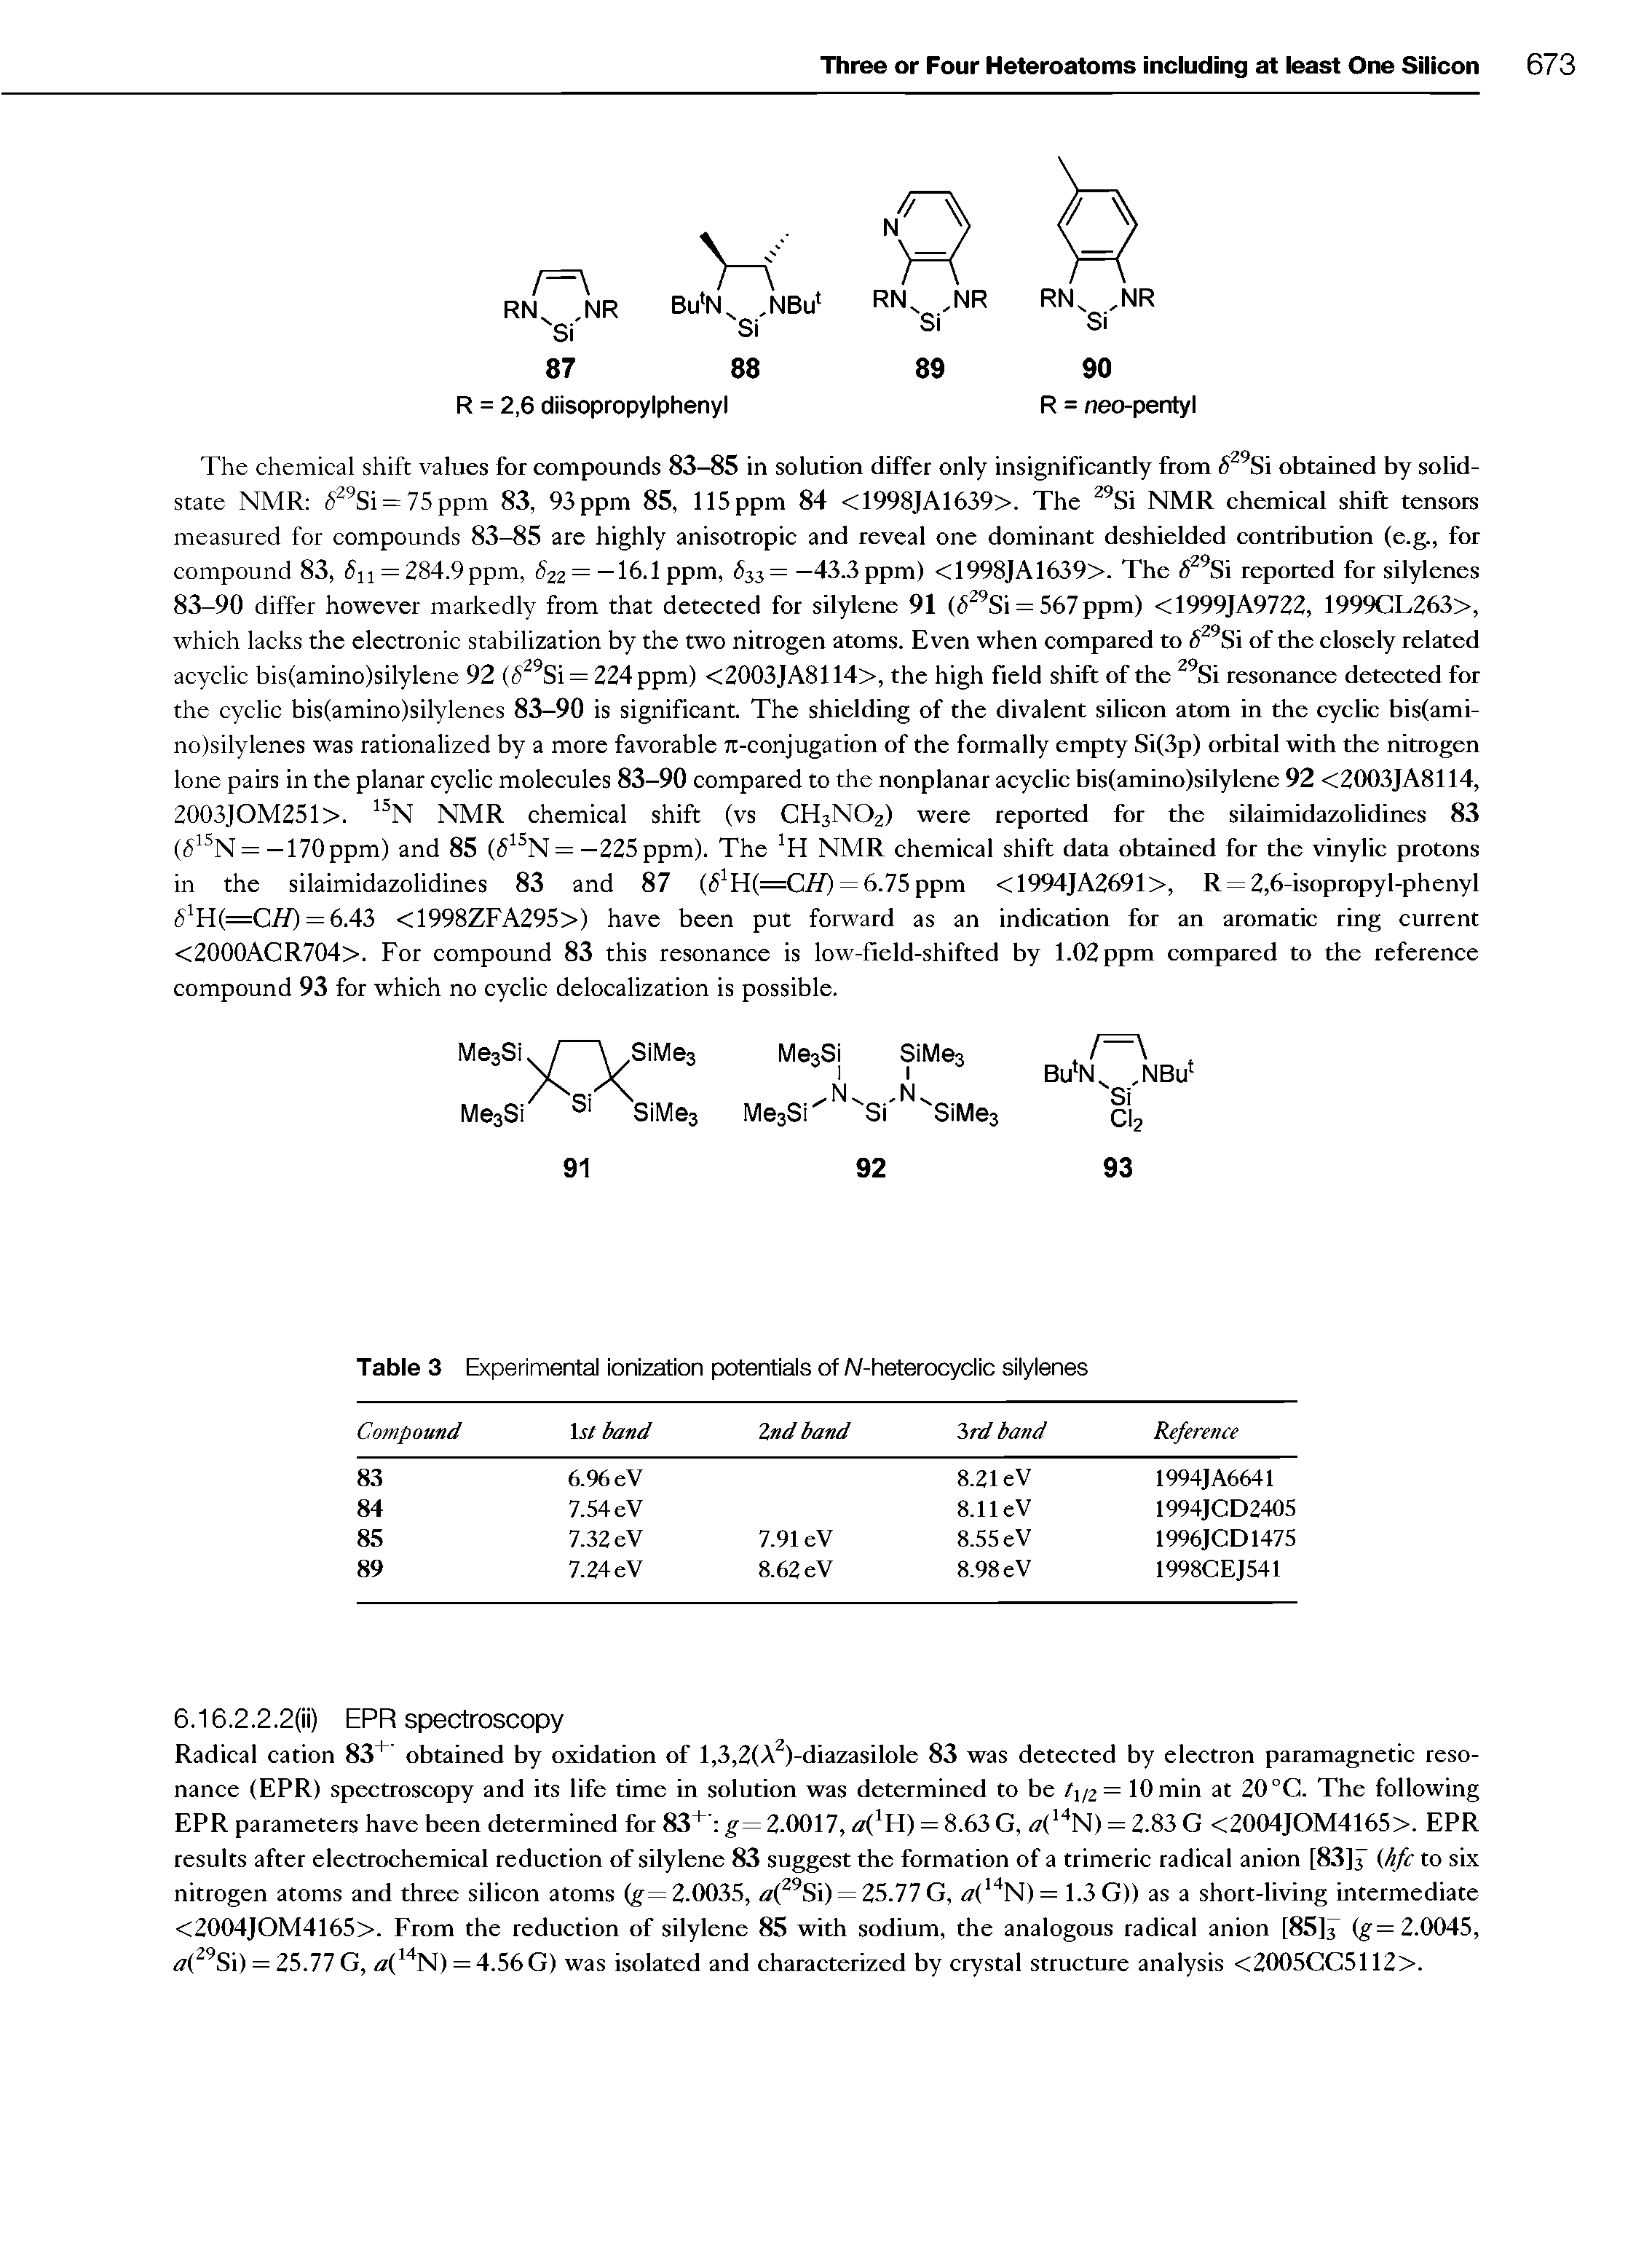 Table 3 Experimental ionization potentials of A/-heterocyclic silylenes...